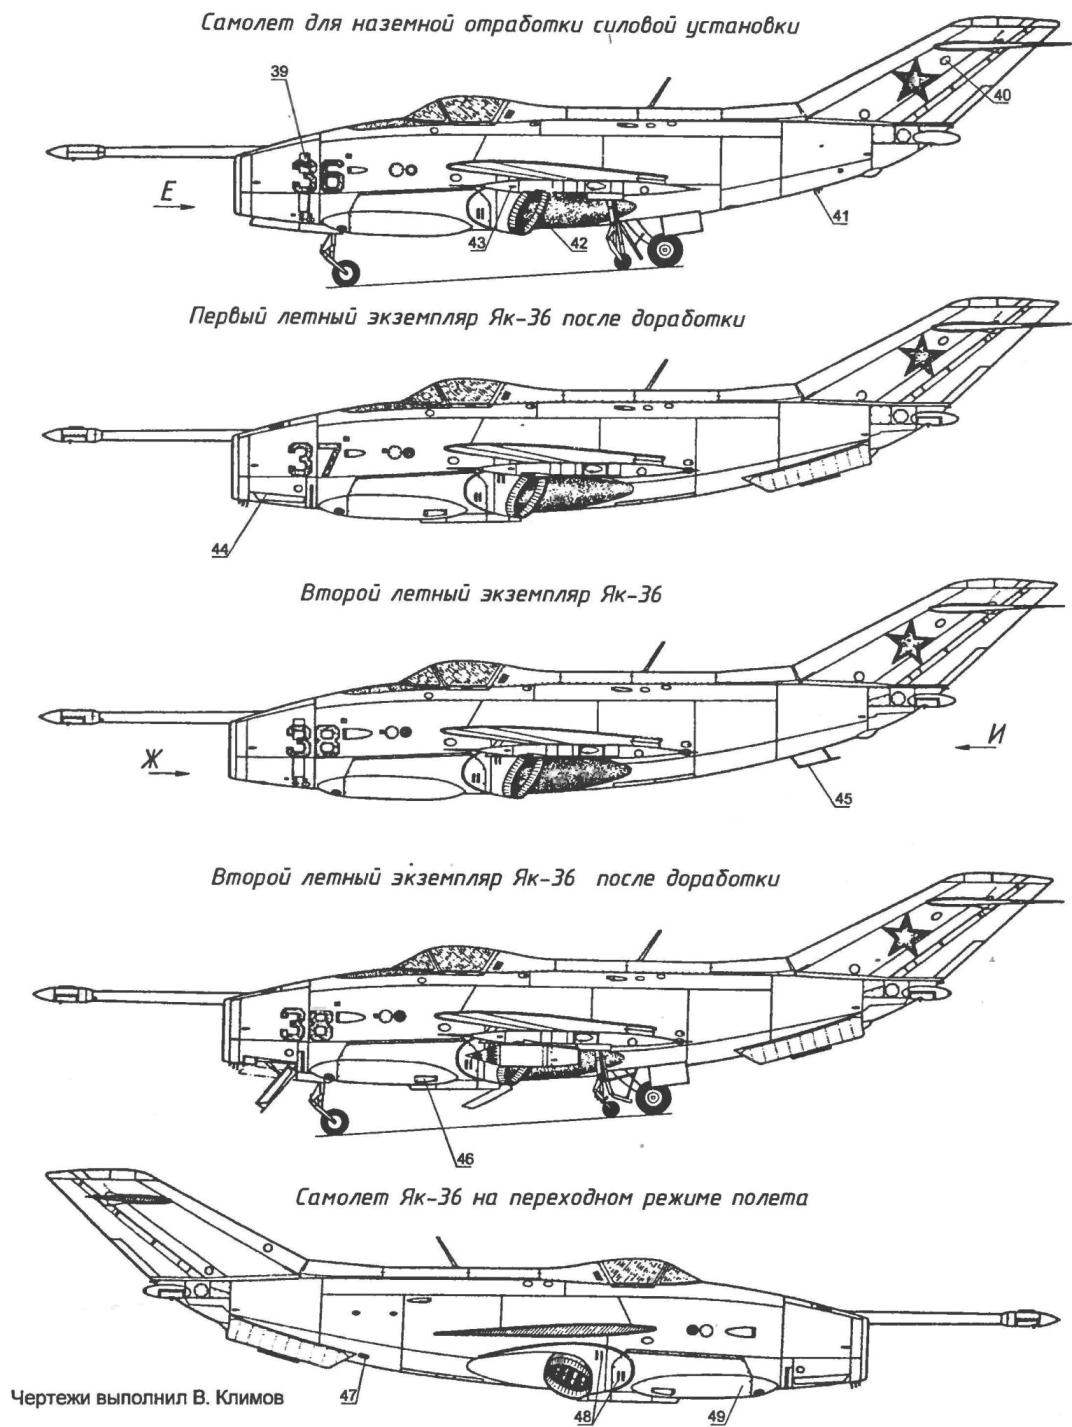 Экспериментальный самолет вертикального взлета и посадки Як-36